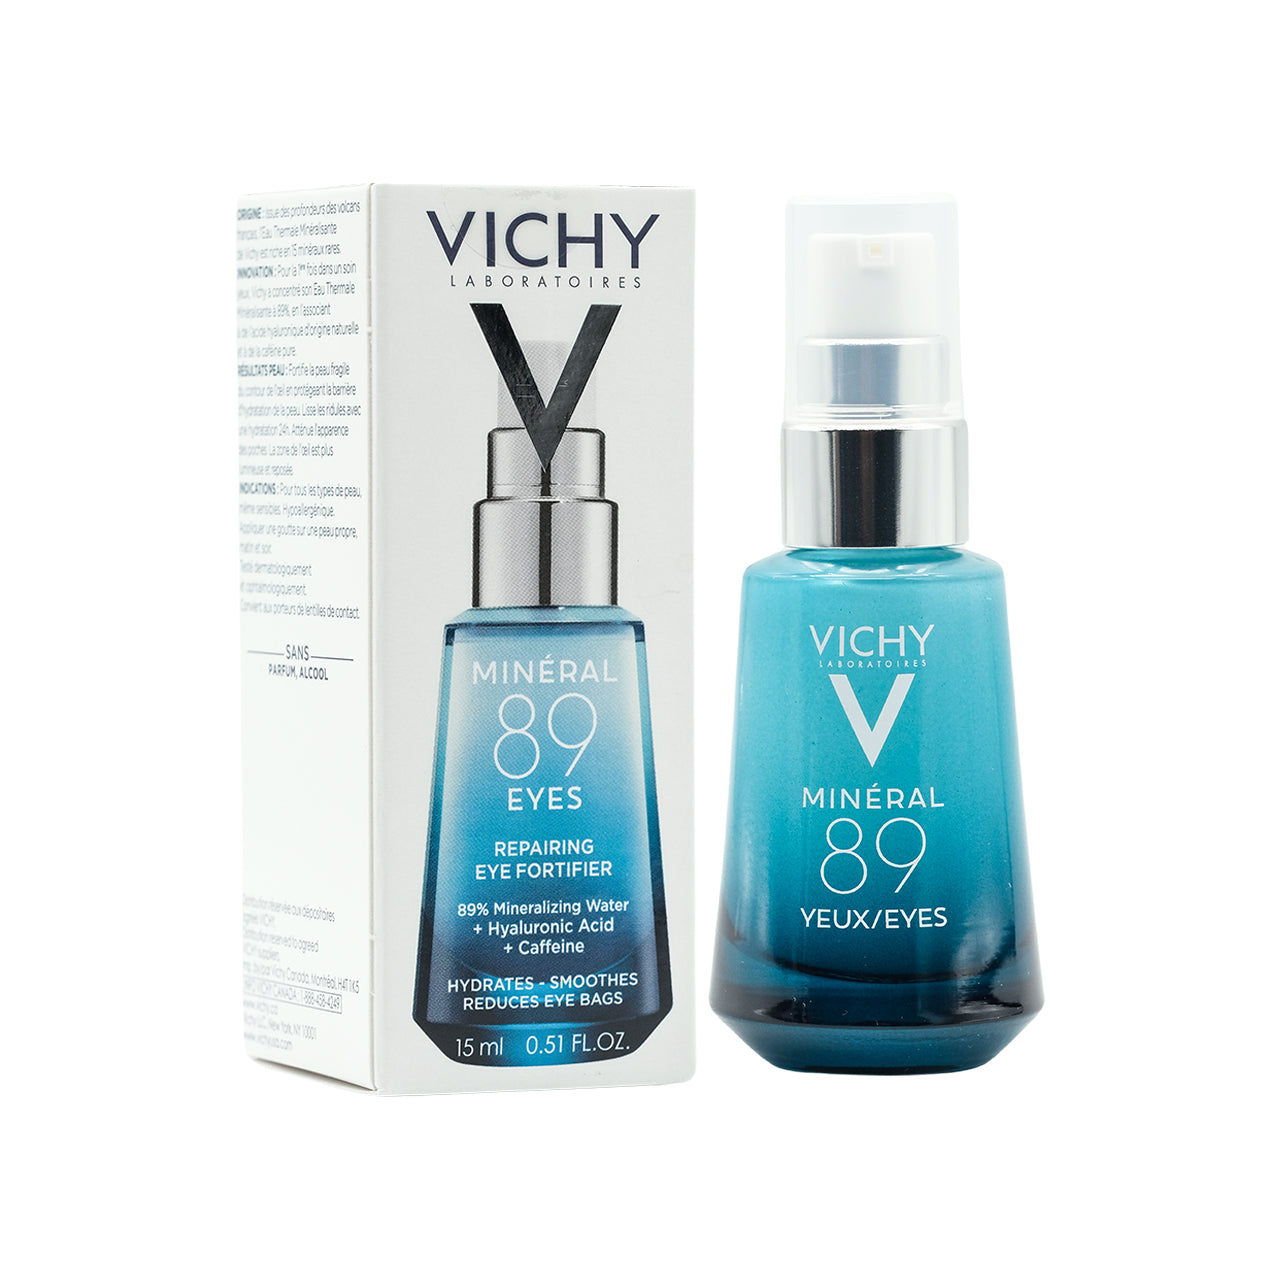 Vichy Minéral 89 Eyes Hyaluronic Acid Eye Fortifier 15ml